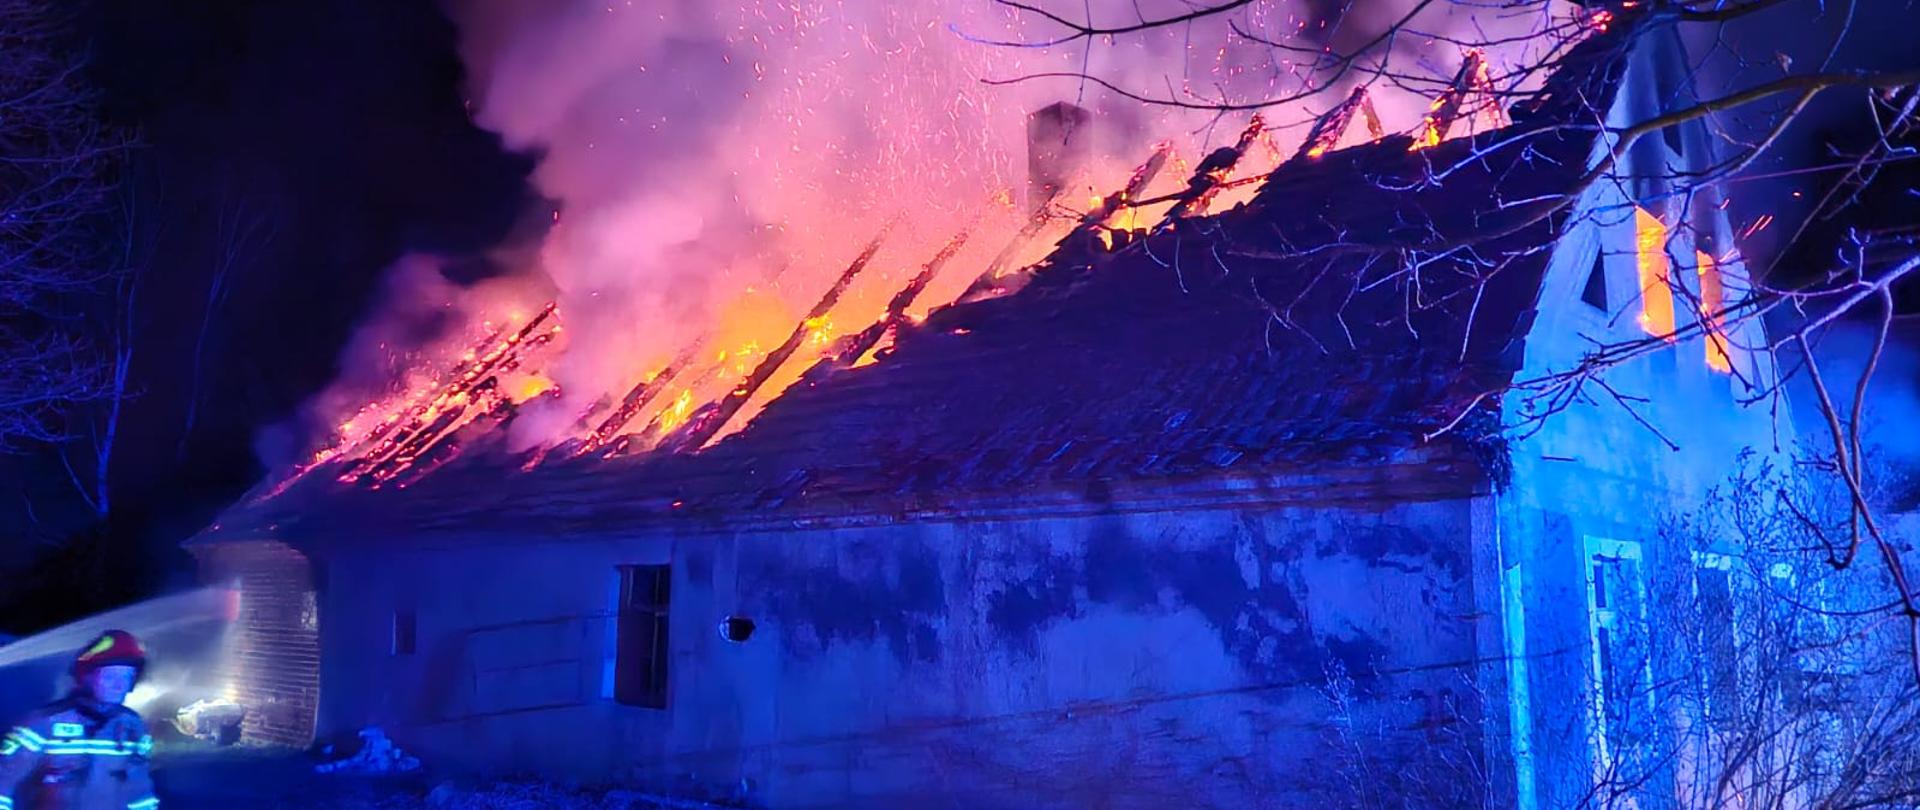 Strażacy gaszą płonący dach budynku.